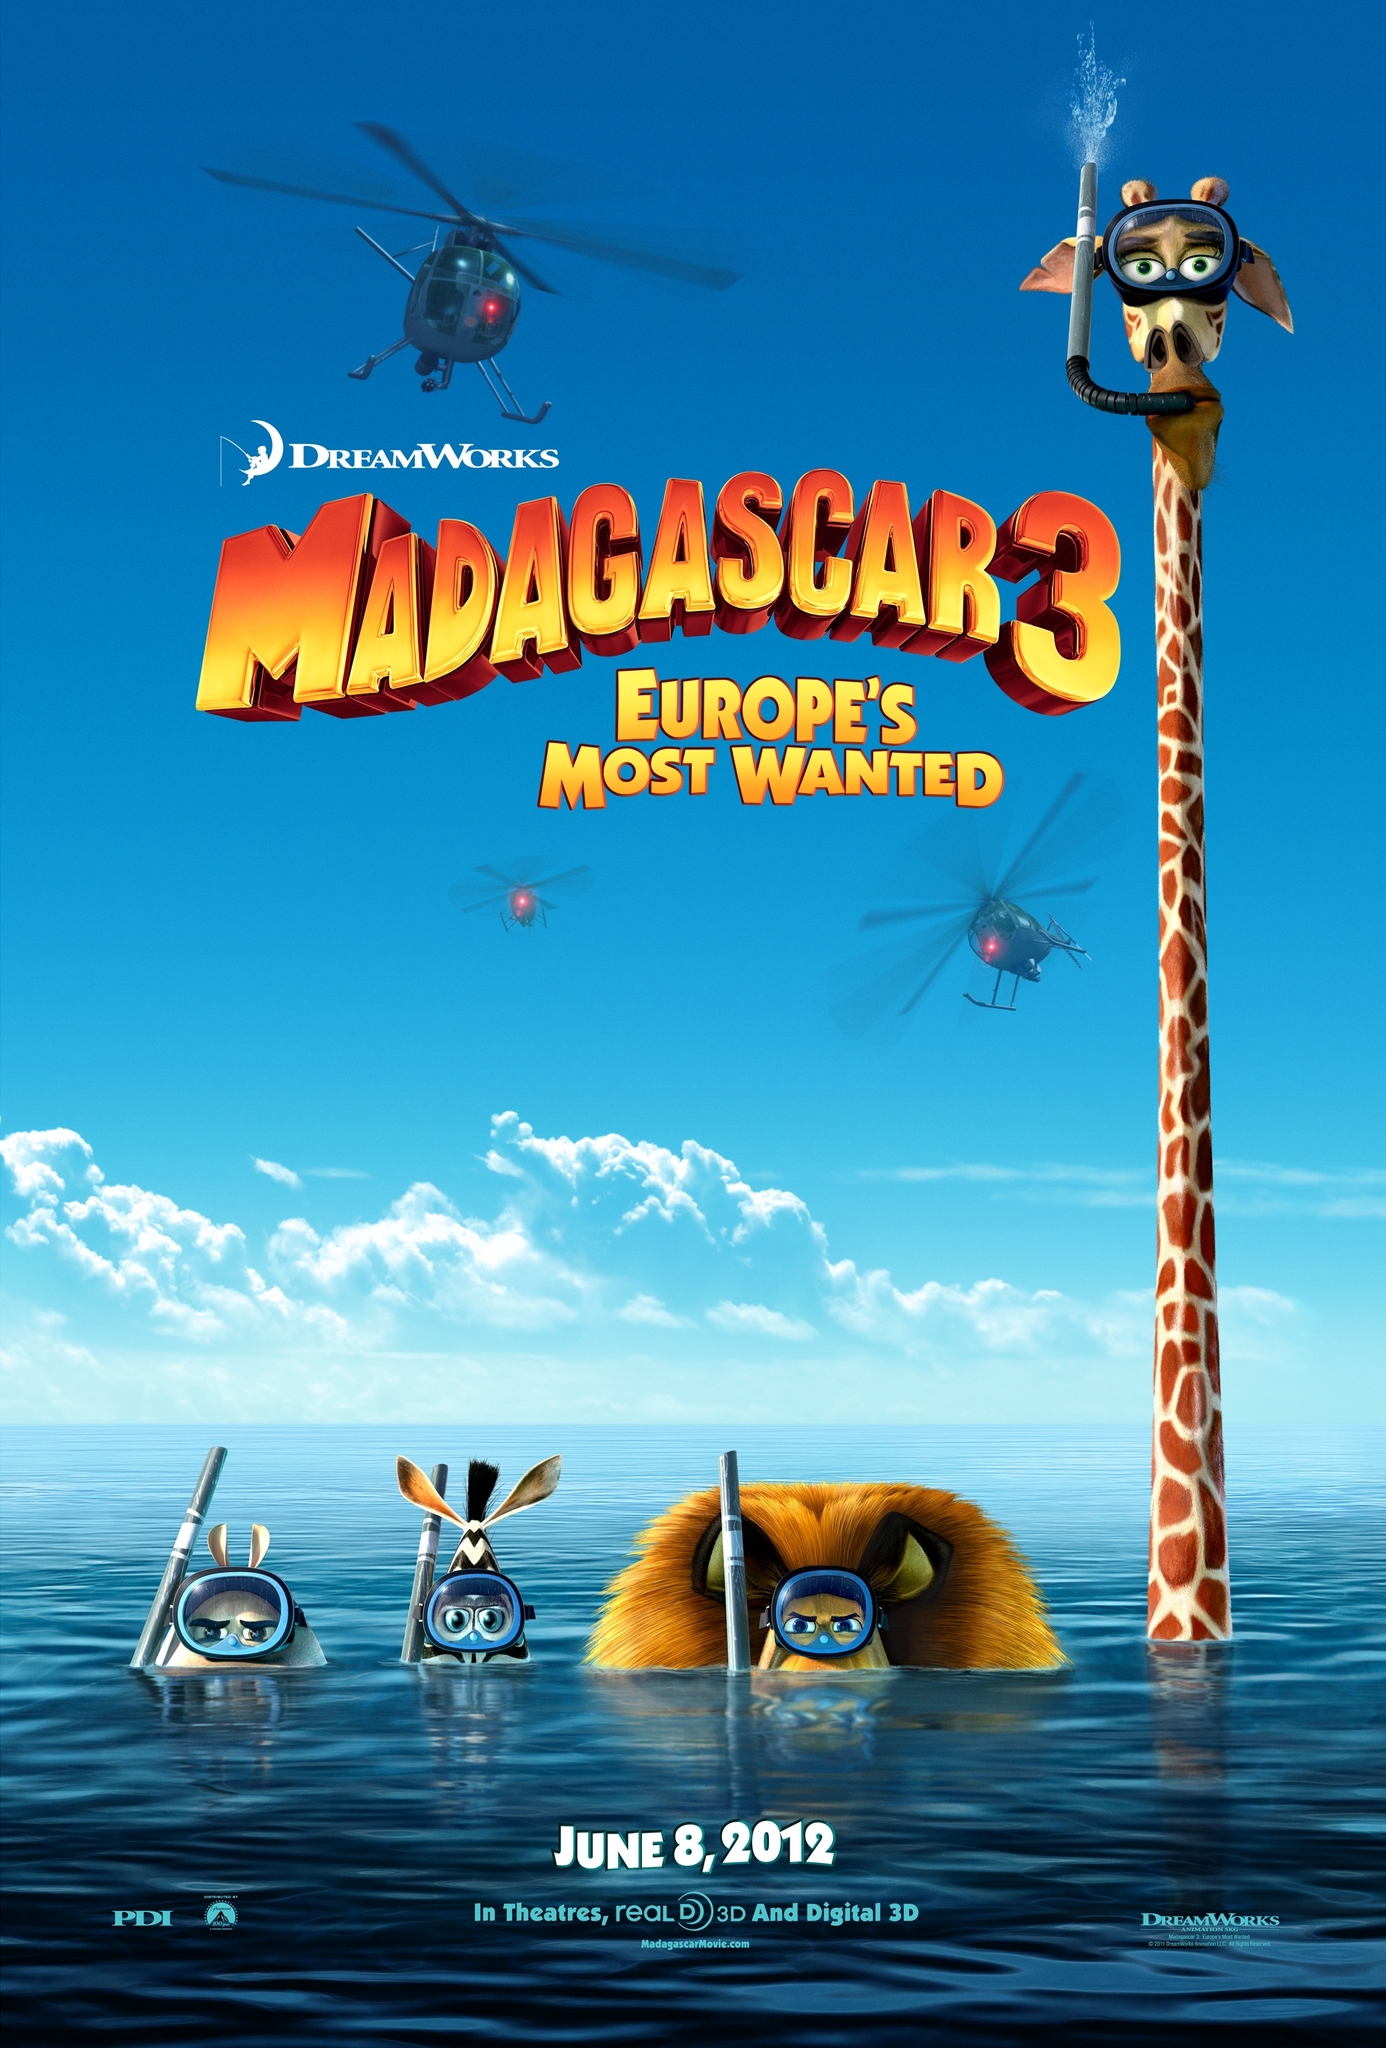 ดูหนังออนไลน์ฟรี Madagascar 3 Europe’s Most Wanted (2012) มาดากัสการ์ 3 ข้ามป่าไปซ่าส์ยุโรป